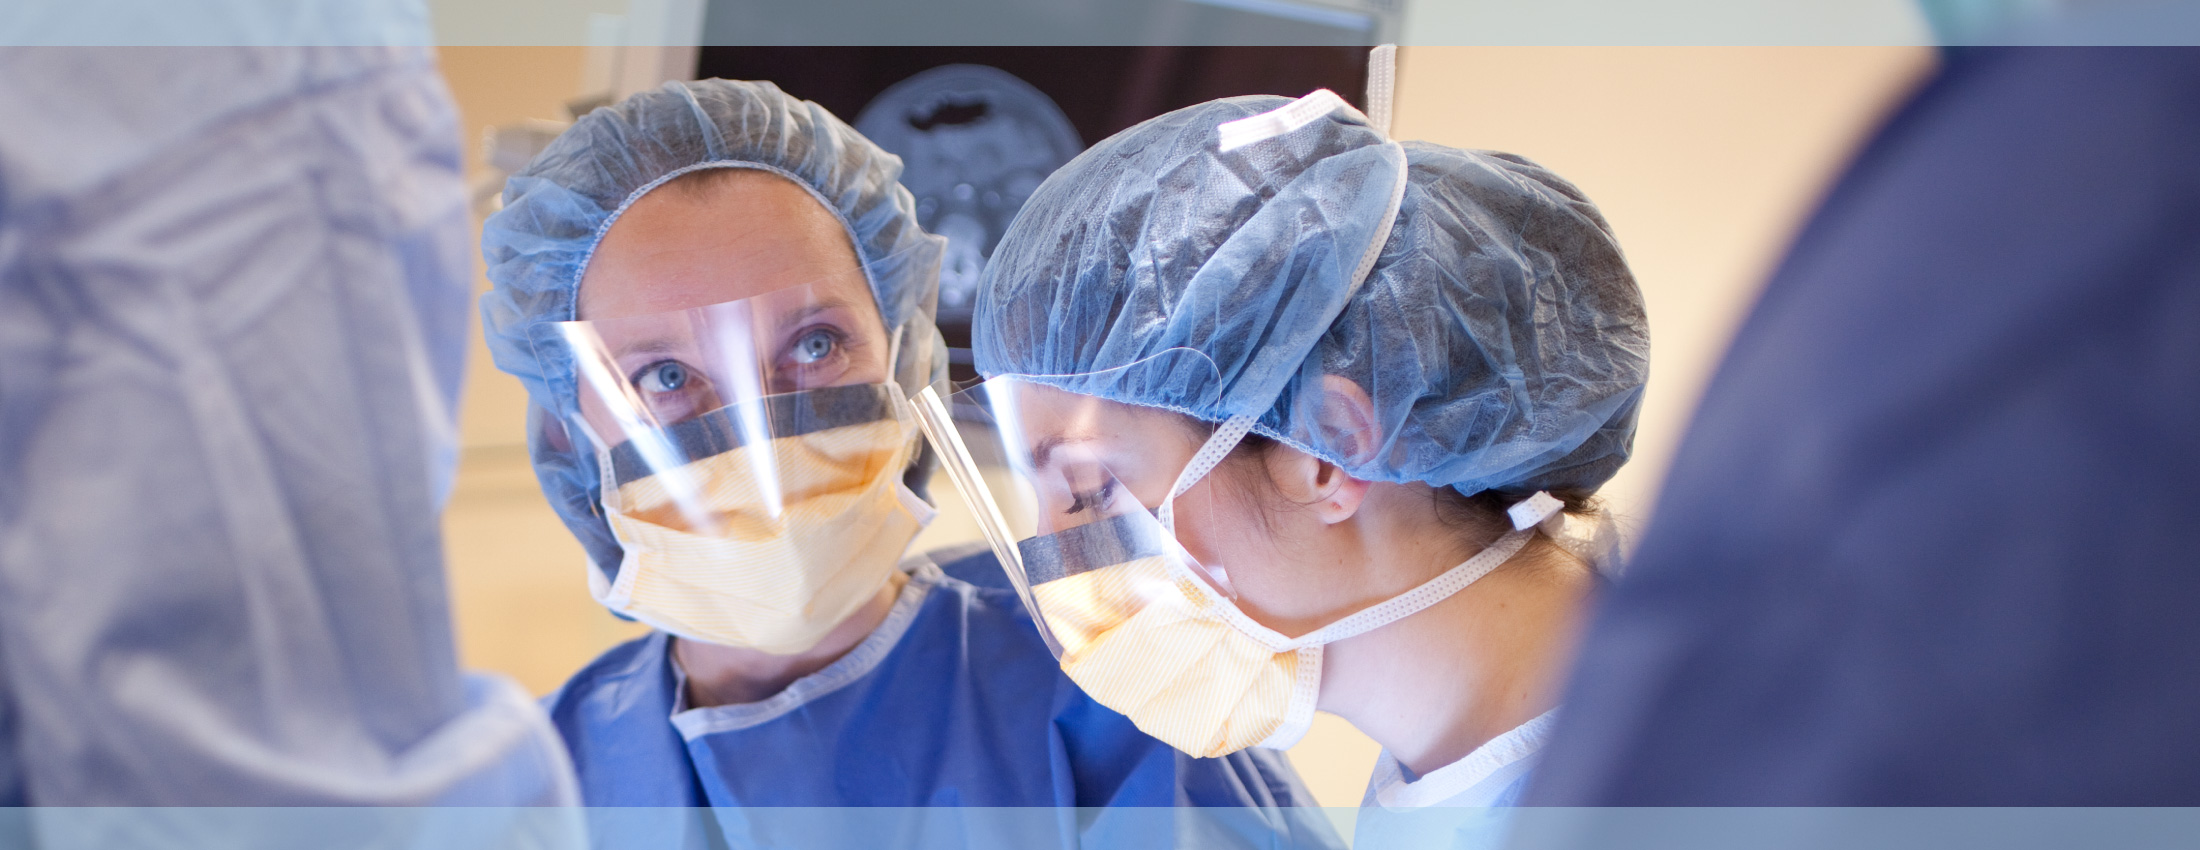 Northwest Surgical Specialists Procedures